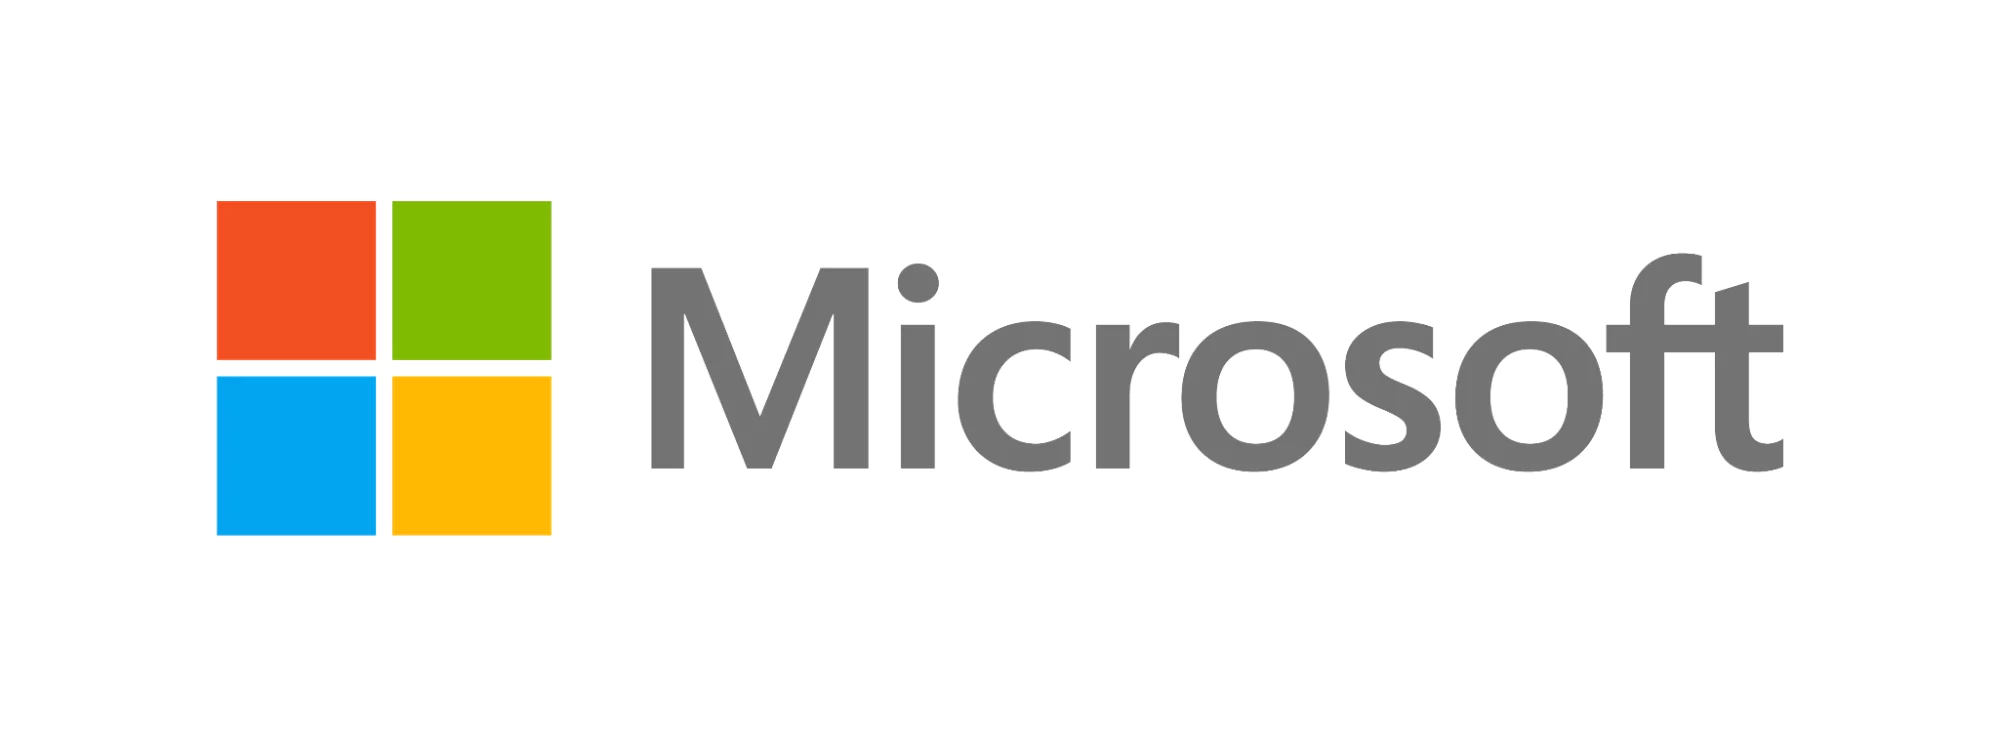 Microsoft logosu, mavi, yeşil, sarı ve kırmızı renklerde dört bölmeli renkli bir pencere